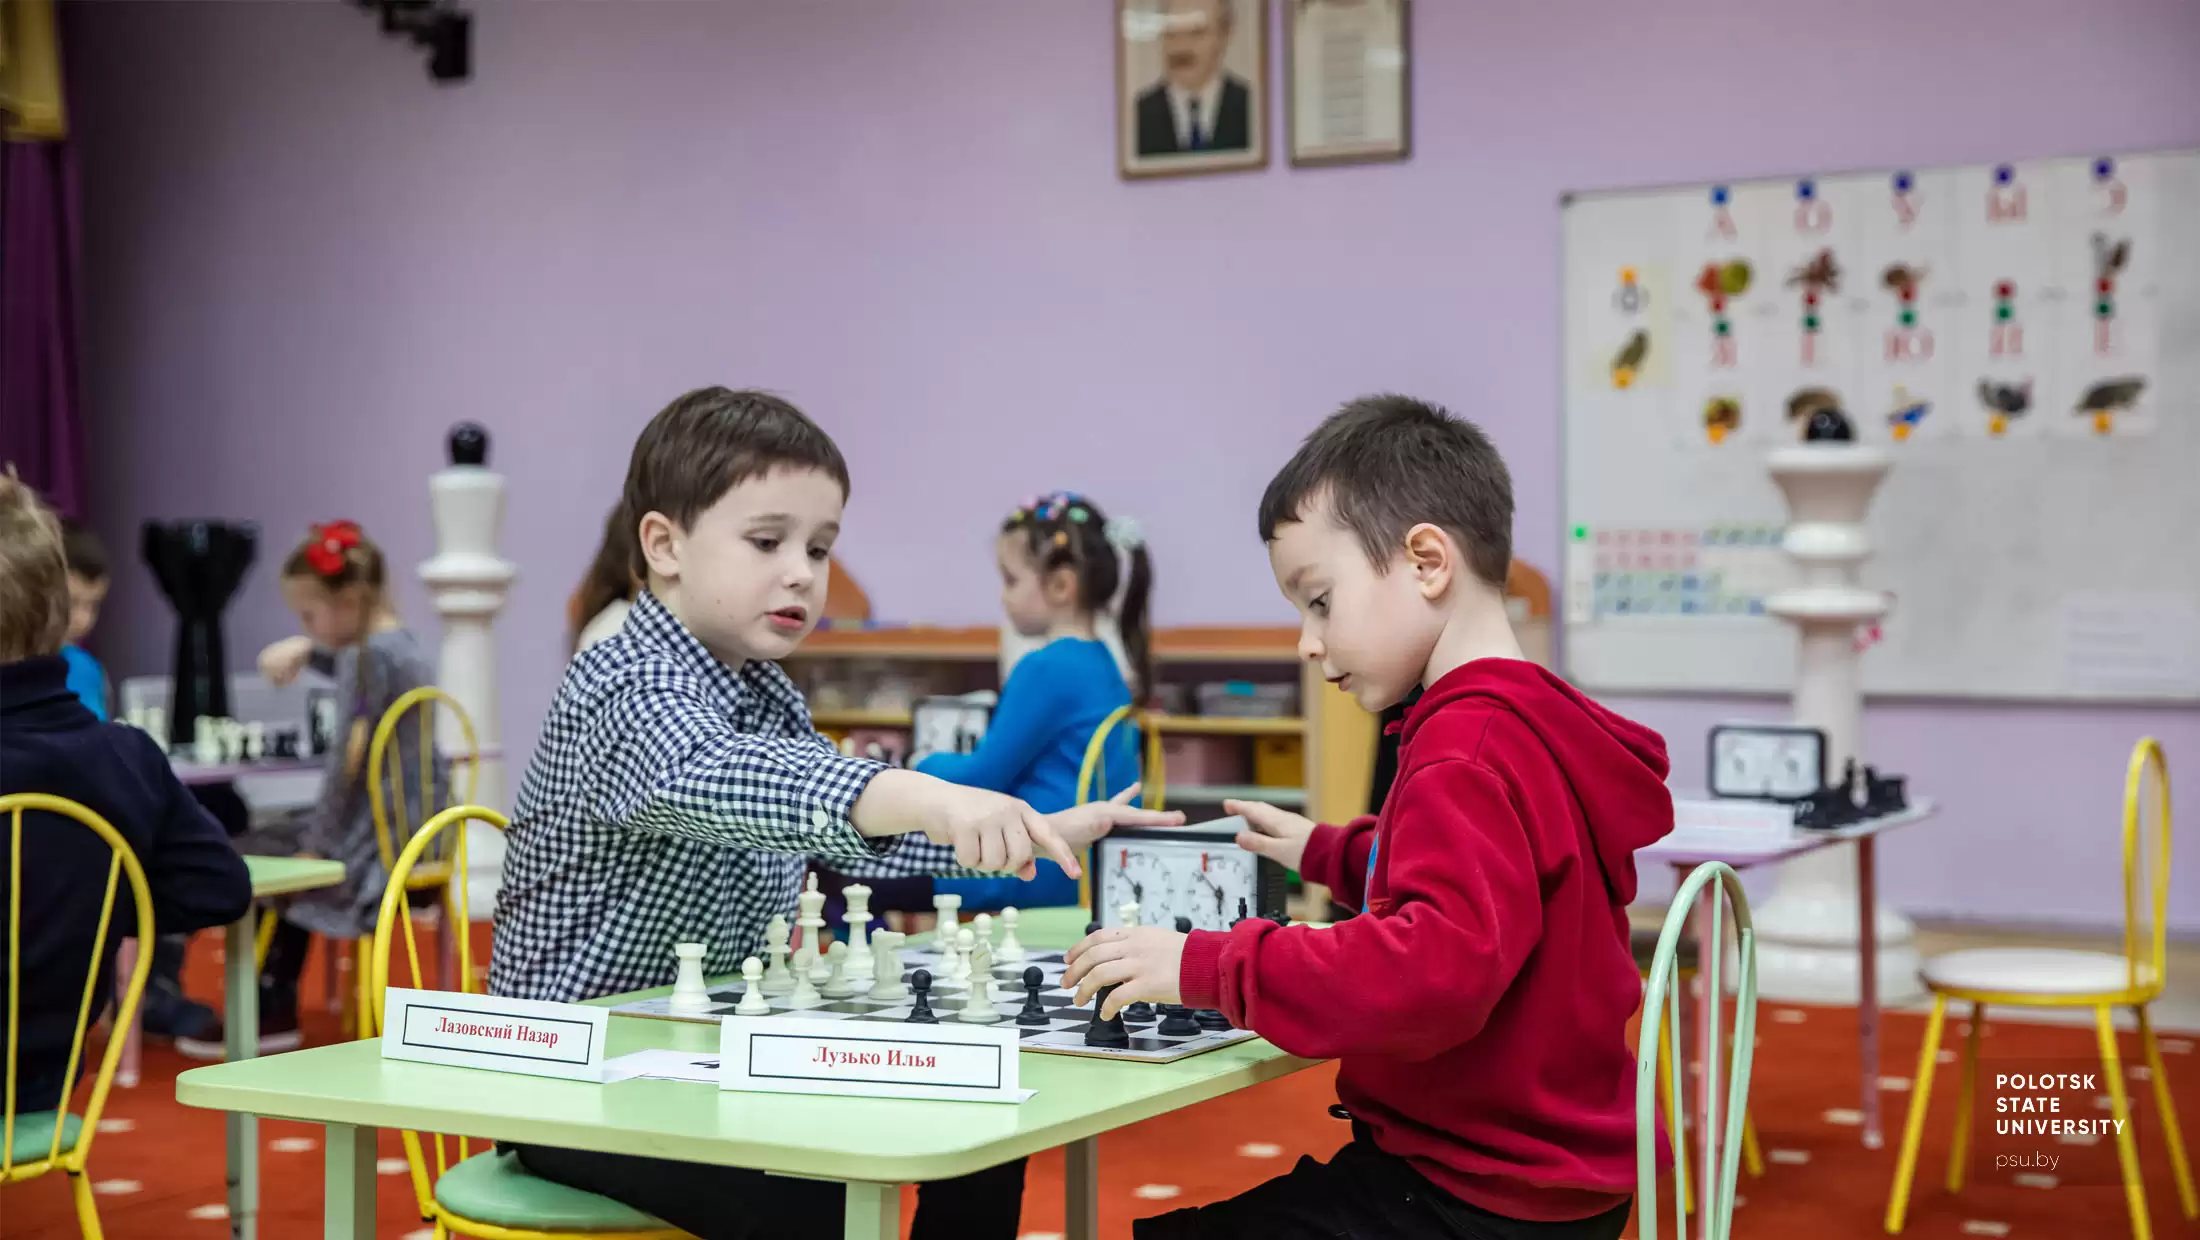 Шахматная партия между Лазовским Назаром и Лузько Ильей